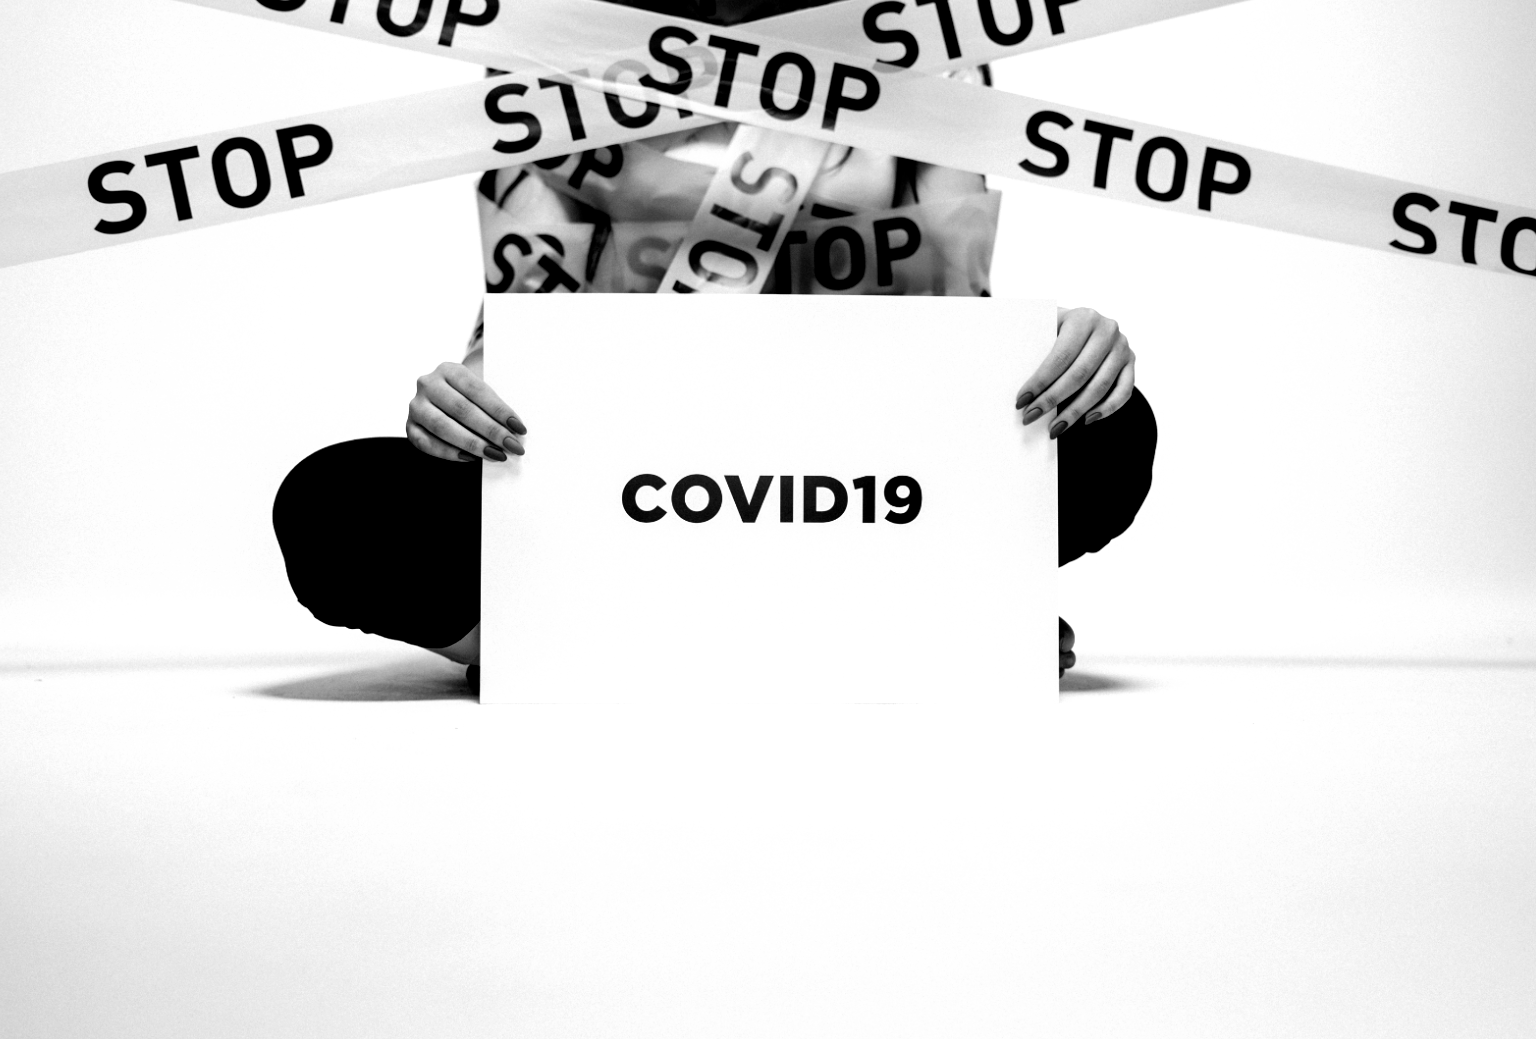 ATTUALITA': COVID-19